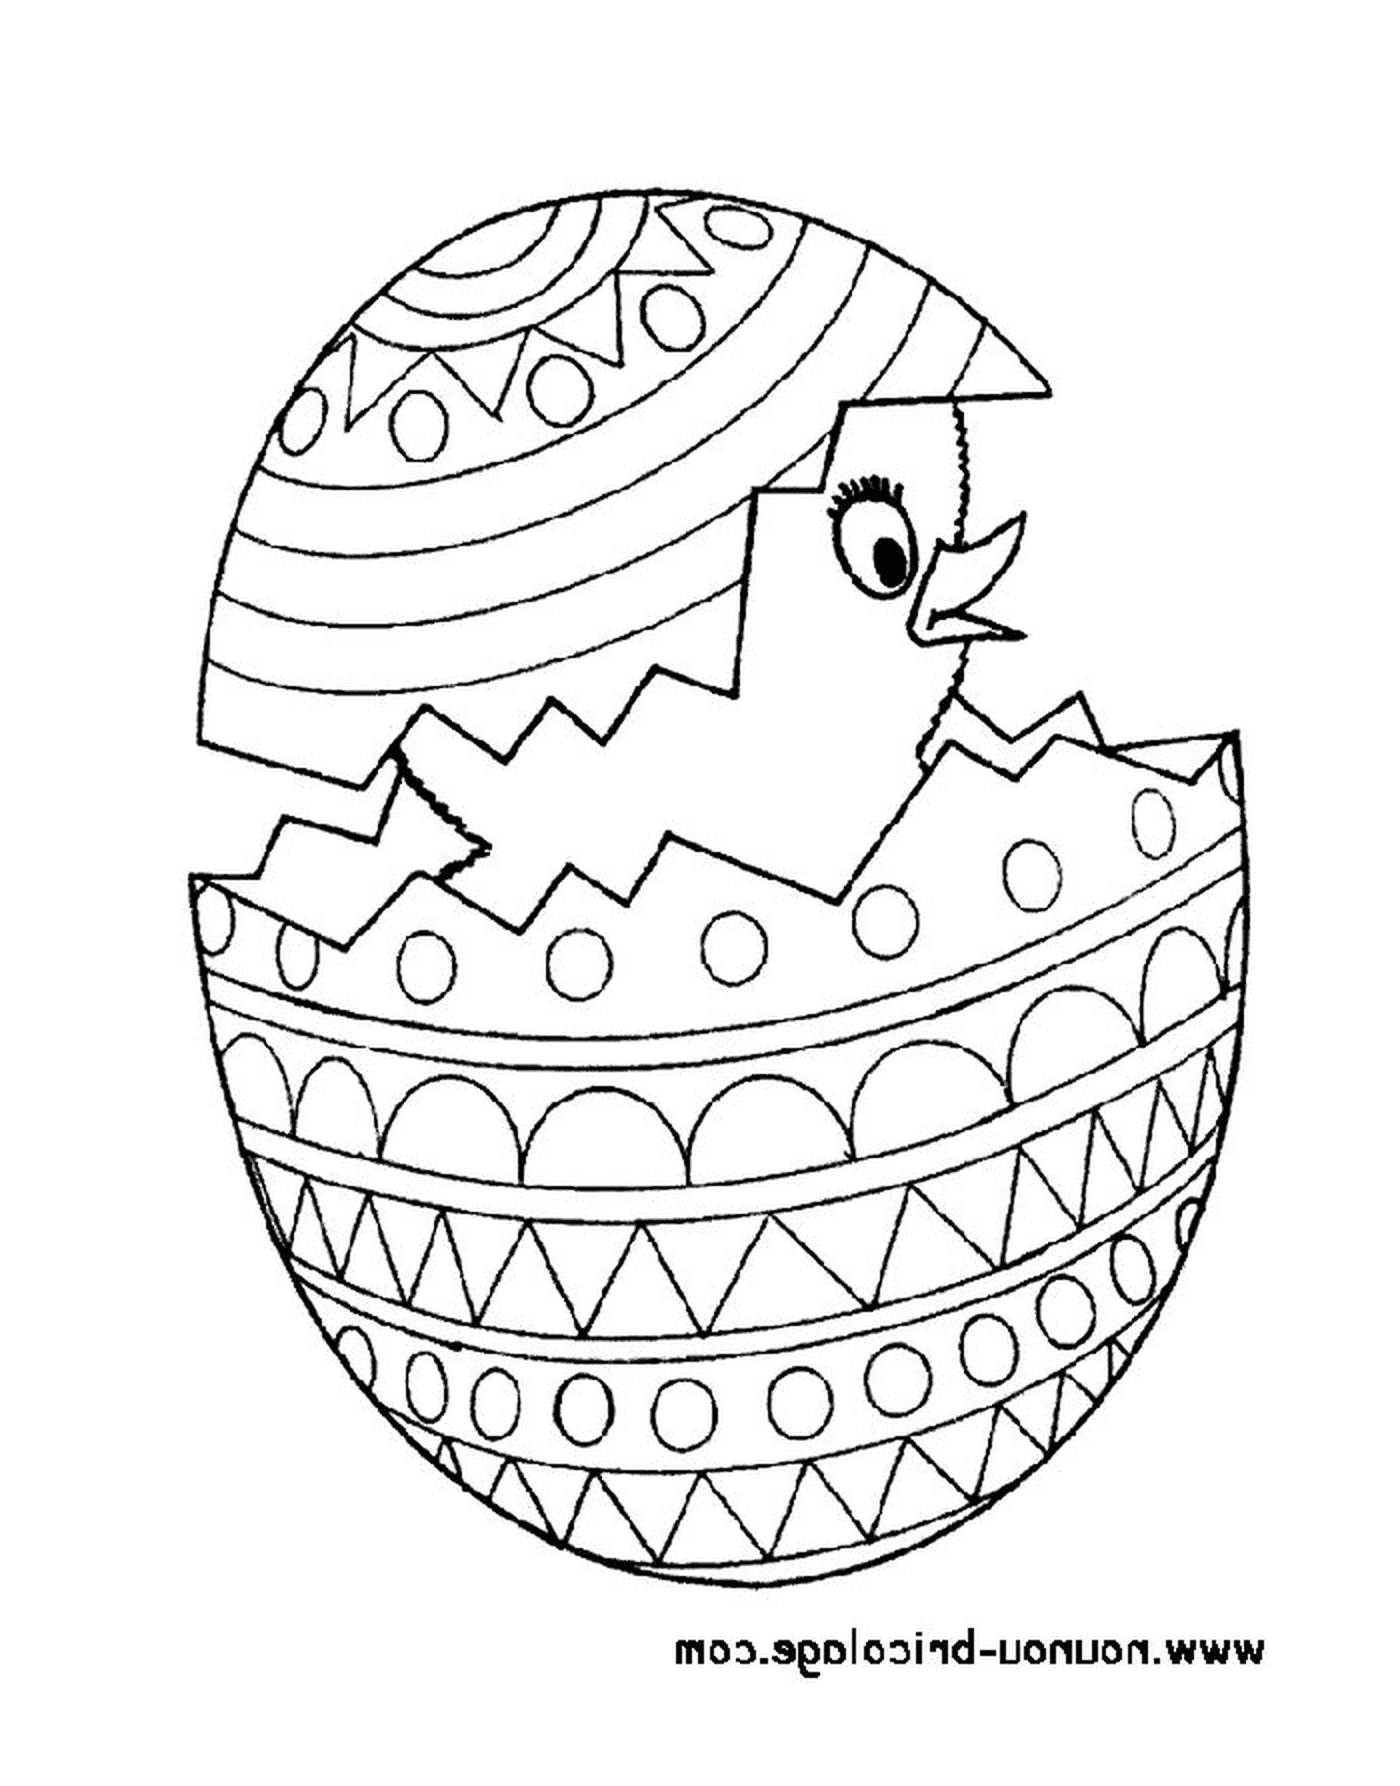  Пасха 48, пасхальное яйцо с цыпочкой внутри 